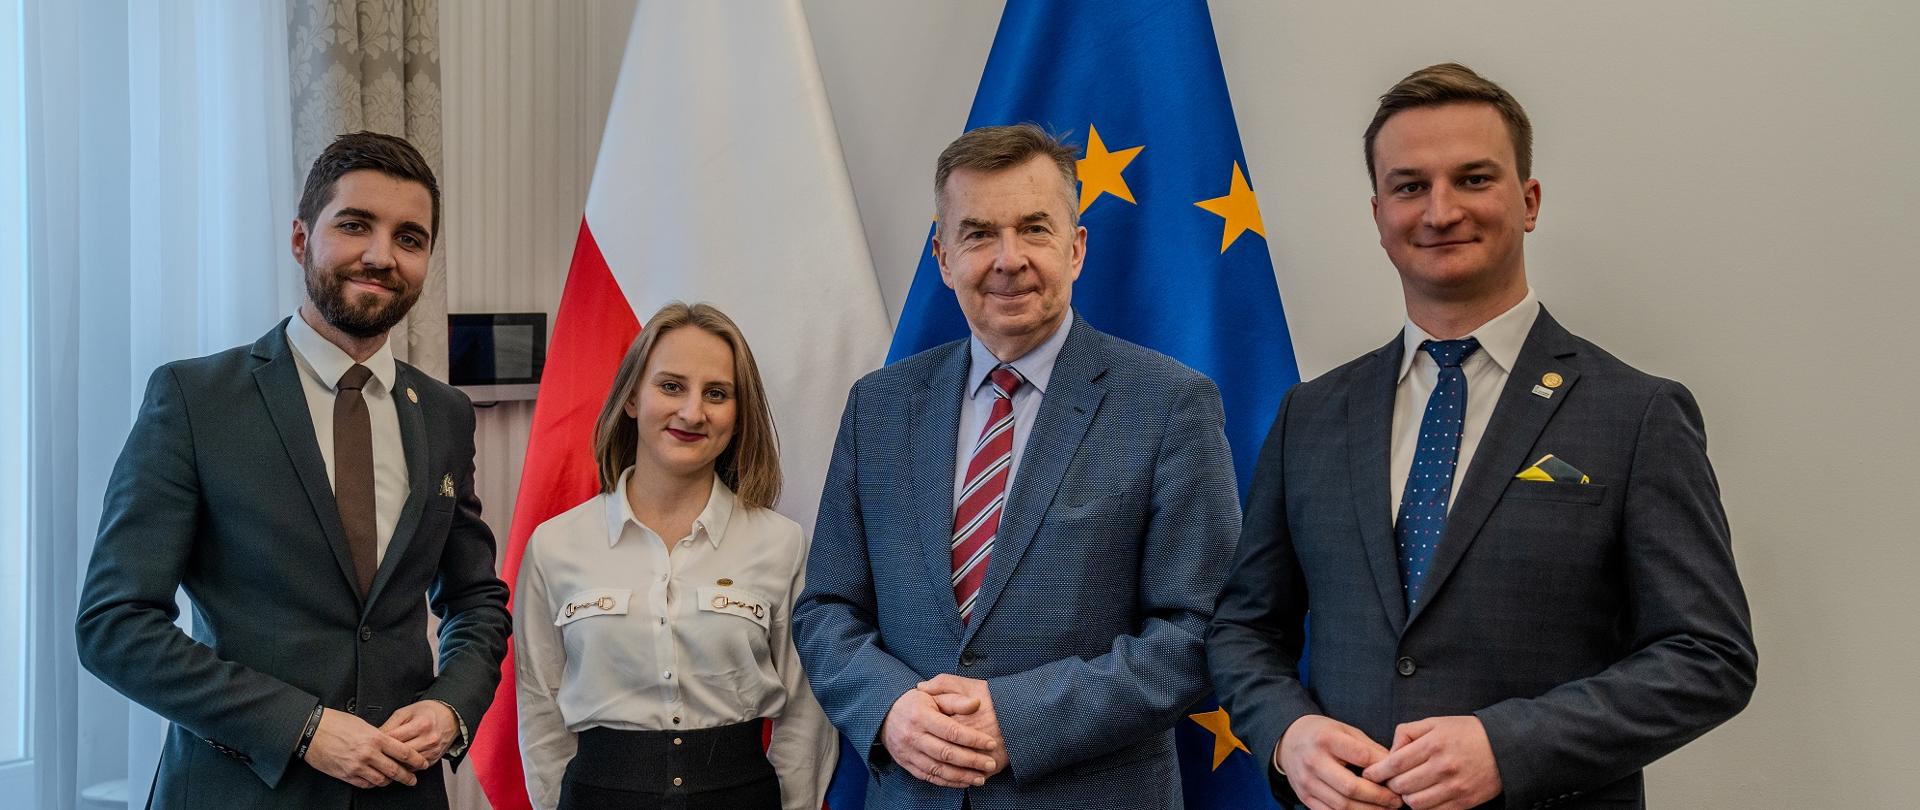 Minister Wieczorek stoi obok dwóch mężczyzn w garniturach i kobiety w białej bluzce, za nimi pod ścianą flagi Polski i UE.